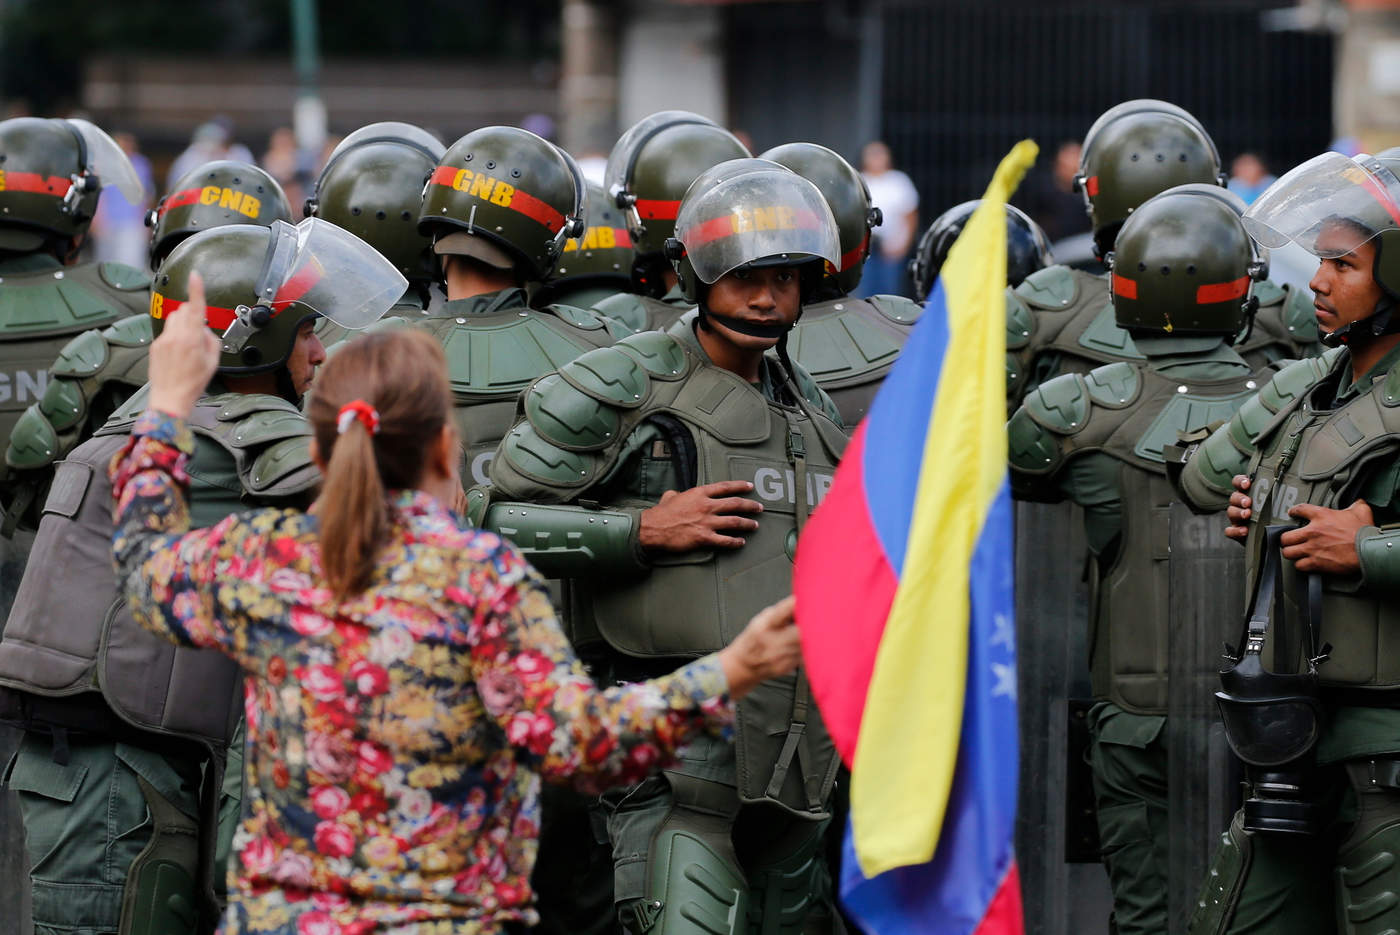 La CIDH recordó al Ejecutivo venezolano que los derechos a la protesta y a la libertad de expresión son 'pilares fundamentales en sociedades democráticas'. (AP)